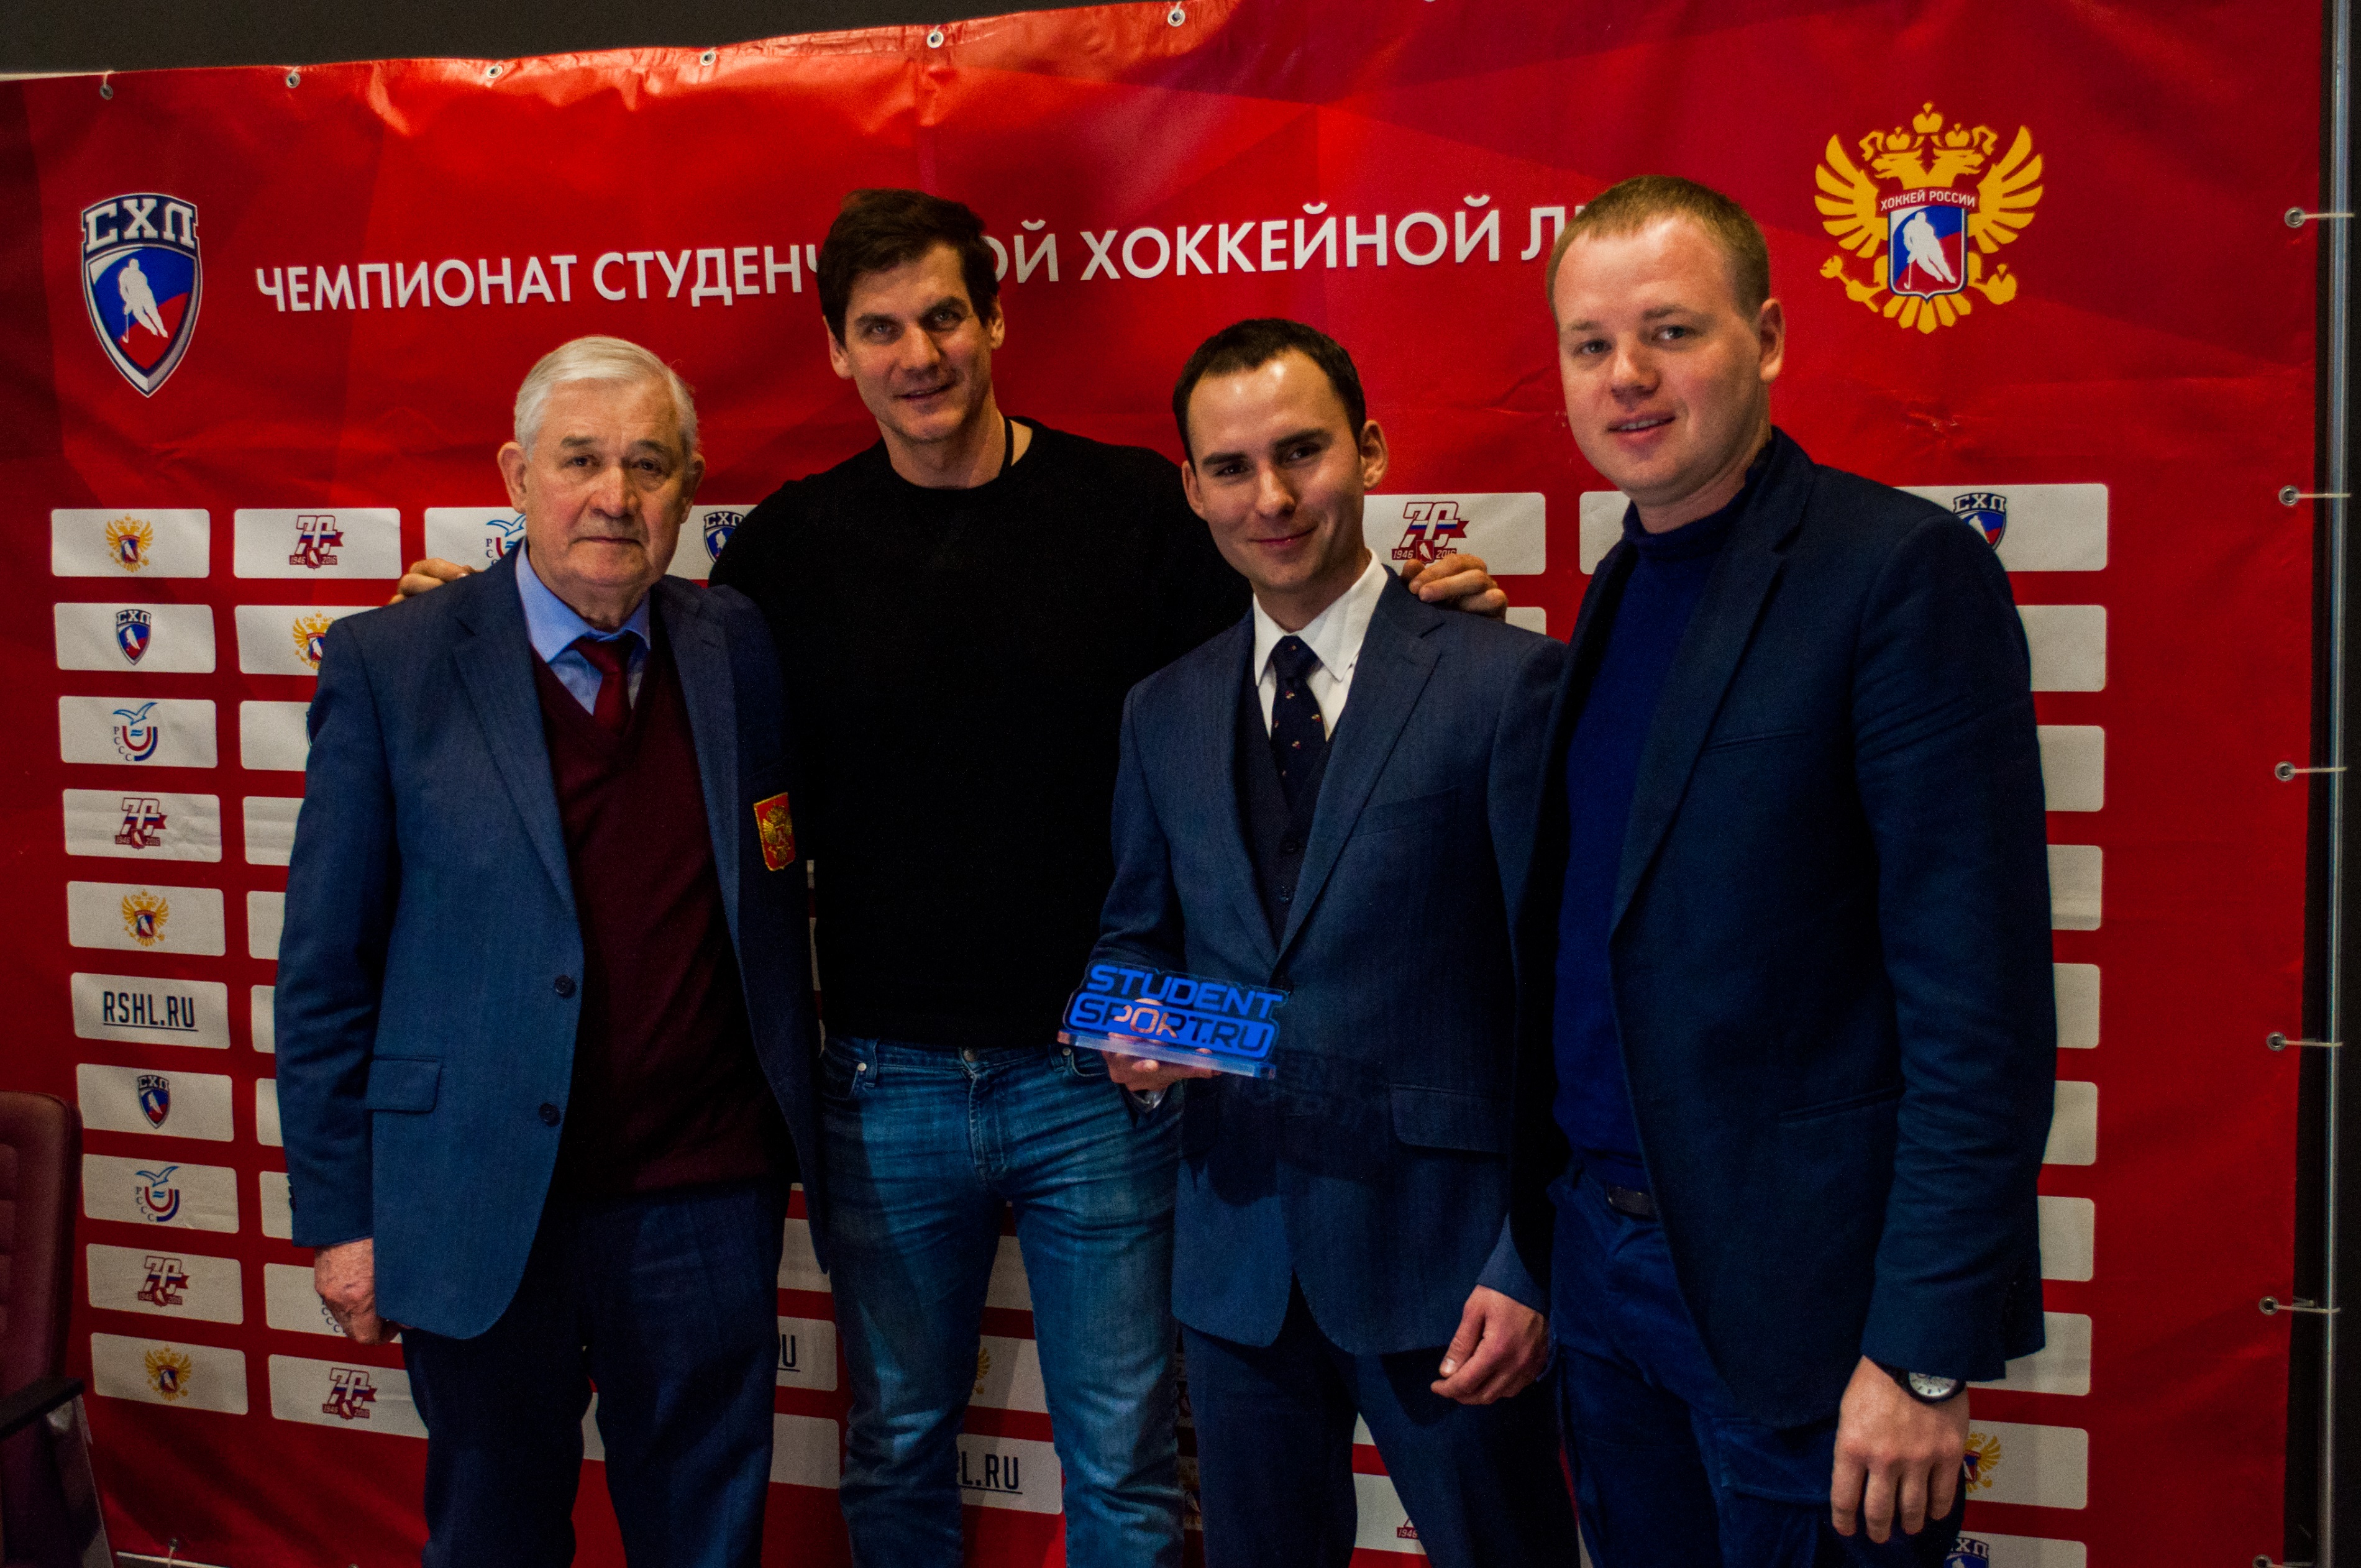 СХЛ подписала соглашение о сотрудничестве со studentsport.ru